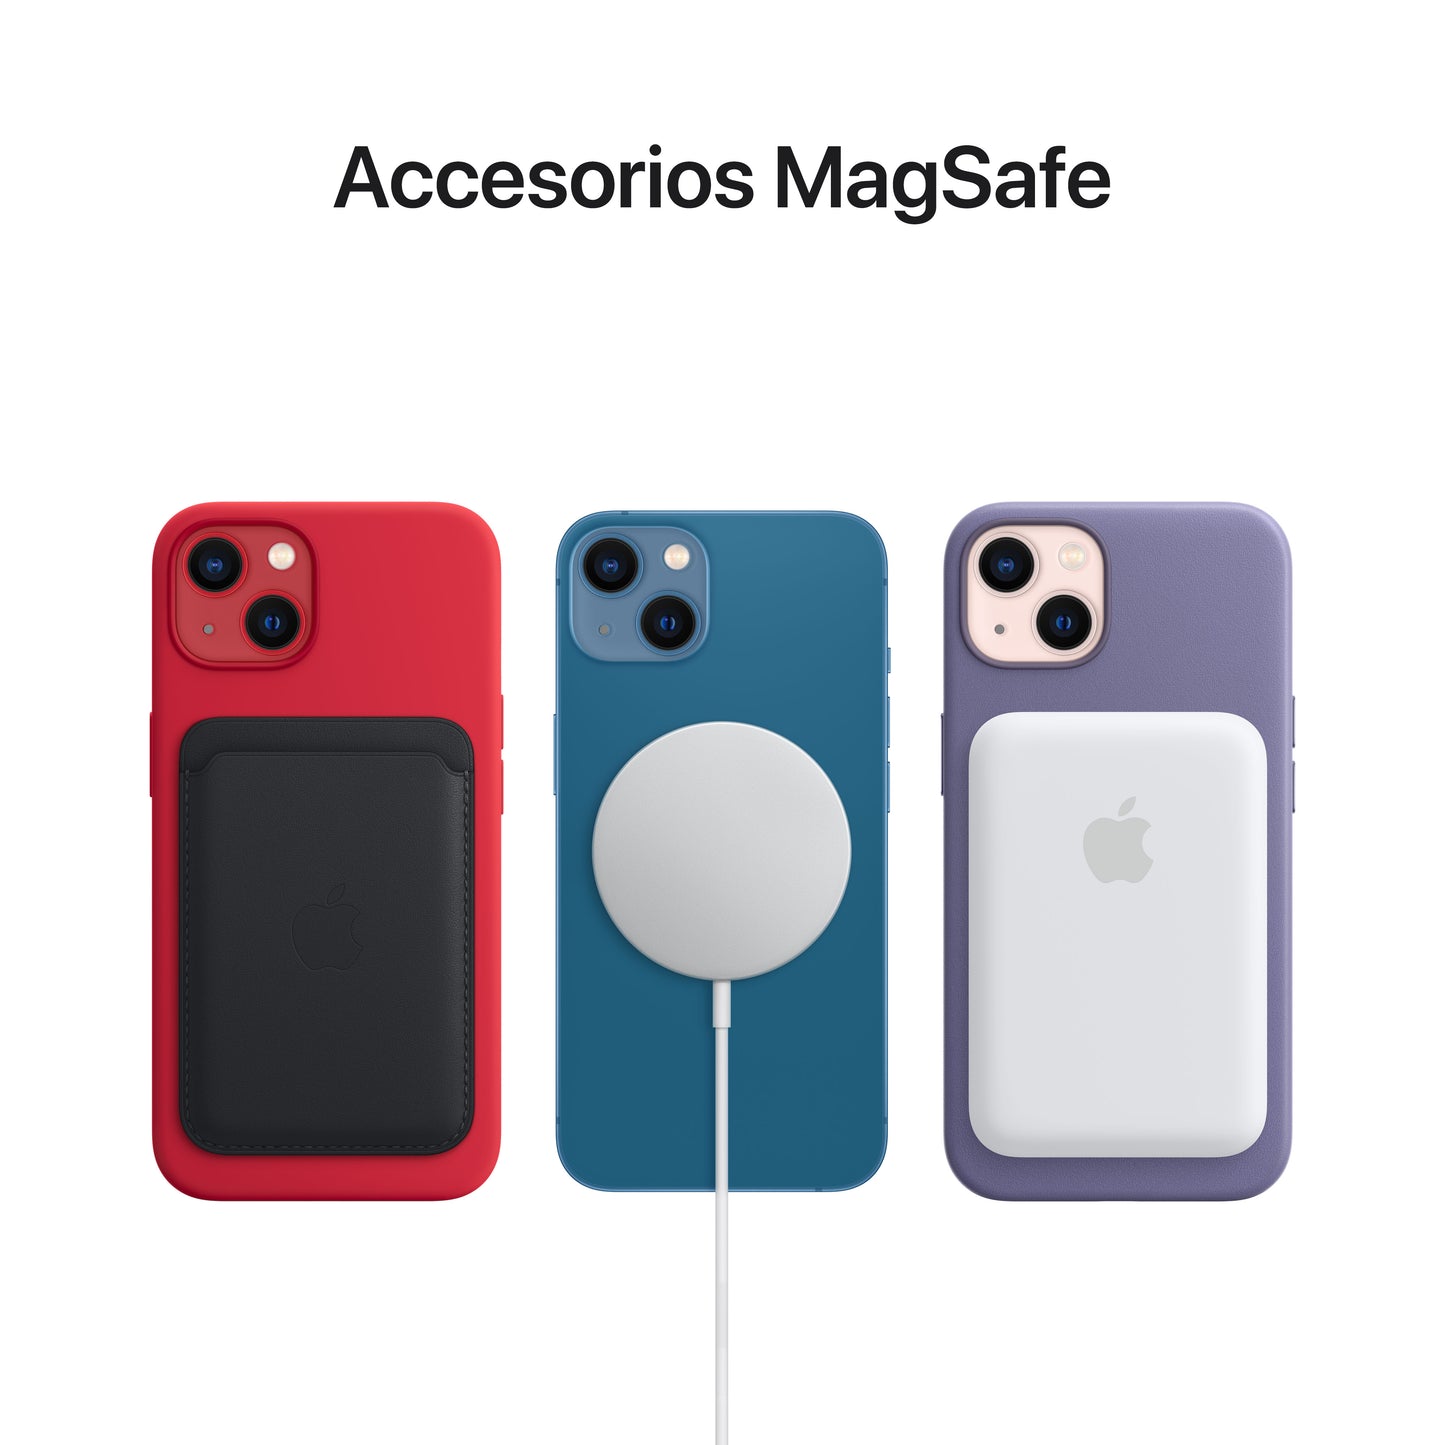 Case transparente con MagSafe para iPhone 13